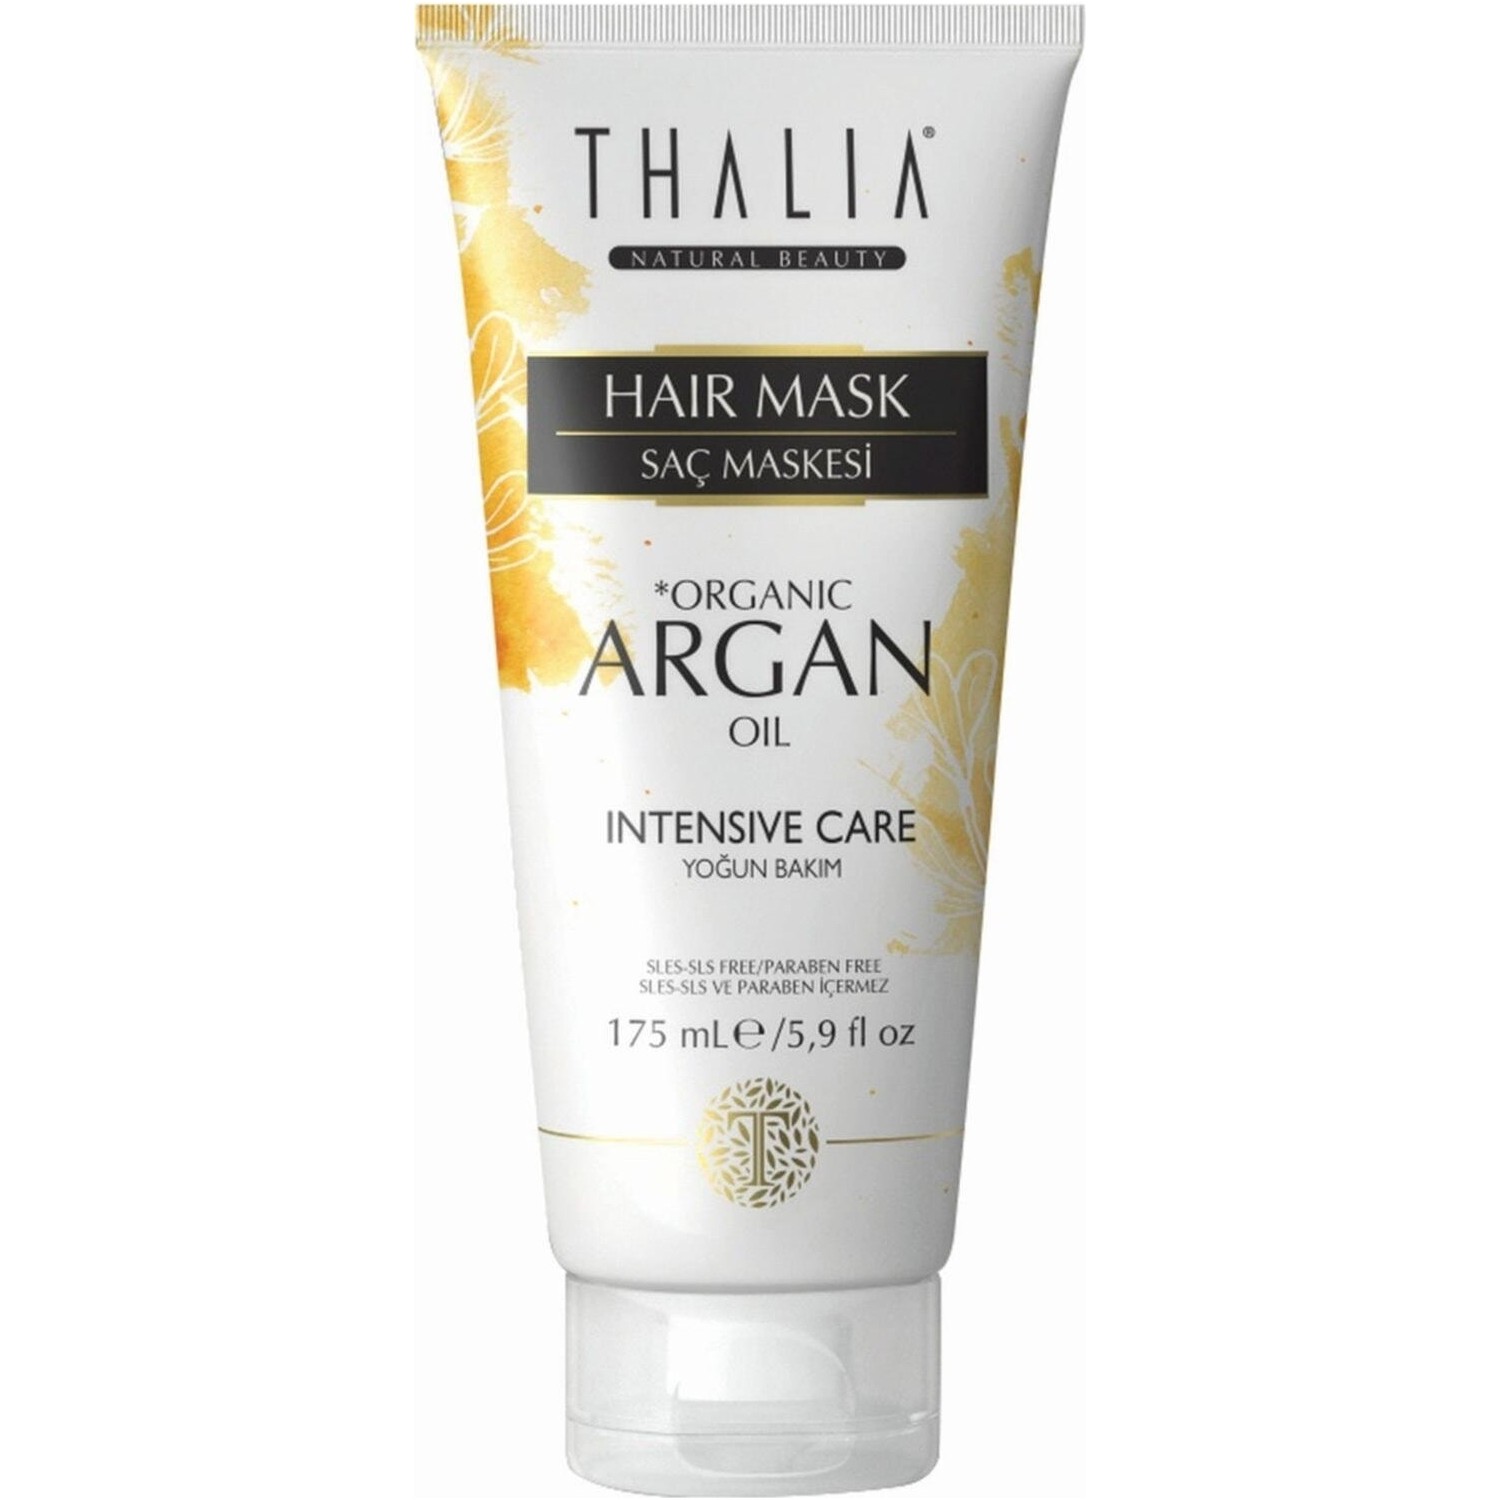 Увлажняющая маска Thalia Organic Argan Oil для волос, 175 мл крем краска для волос с аргановым маслом 7 1 средний блондинпепельный 100 мл